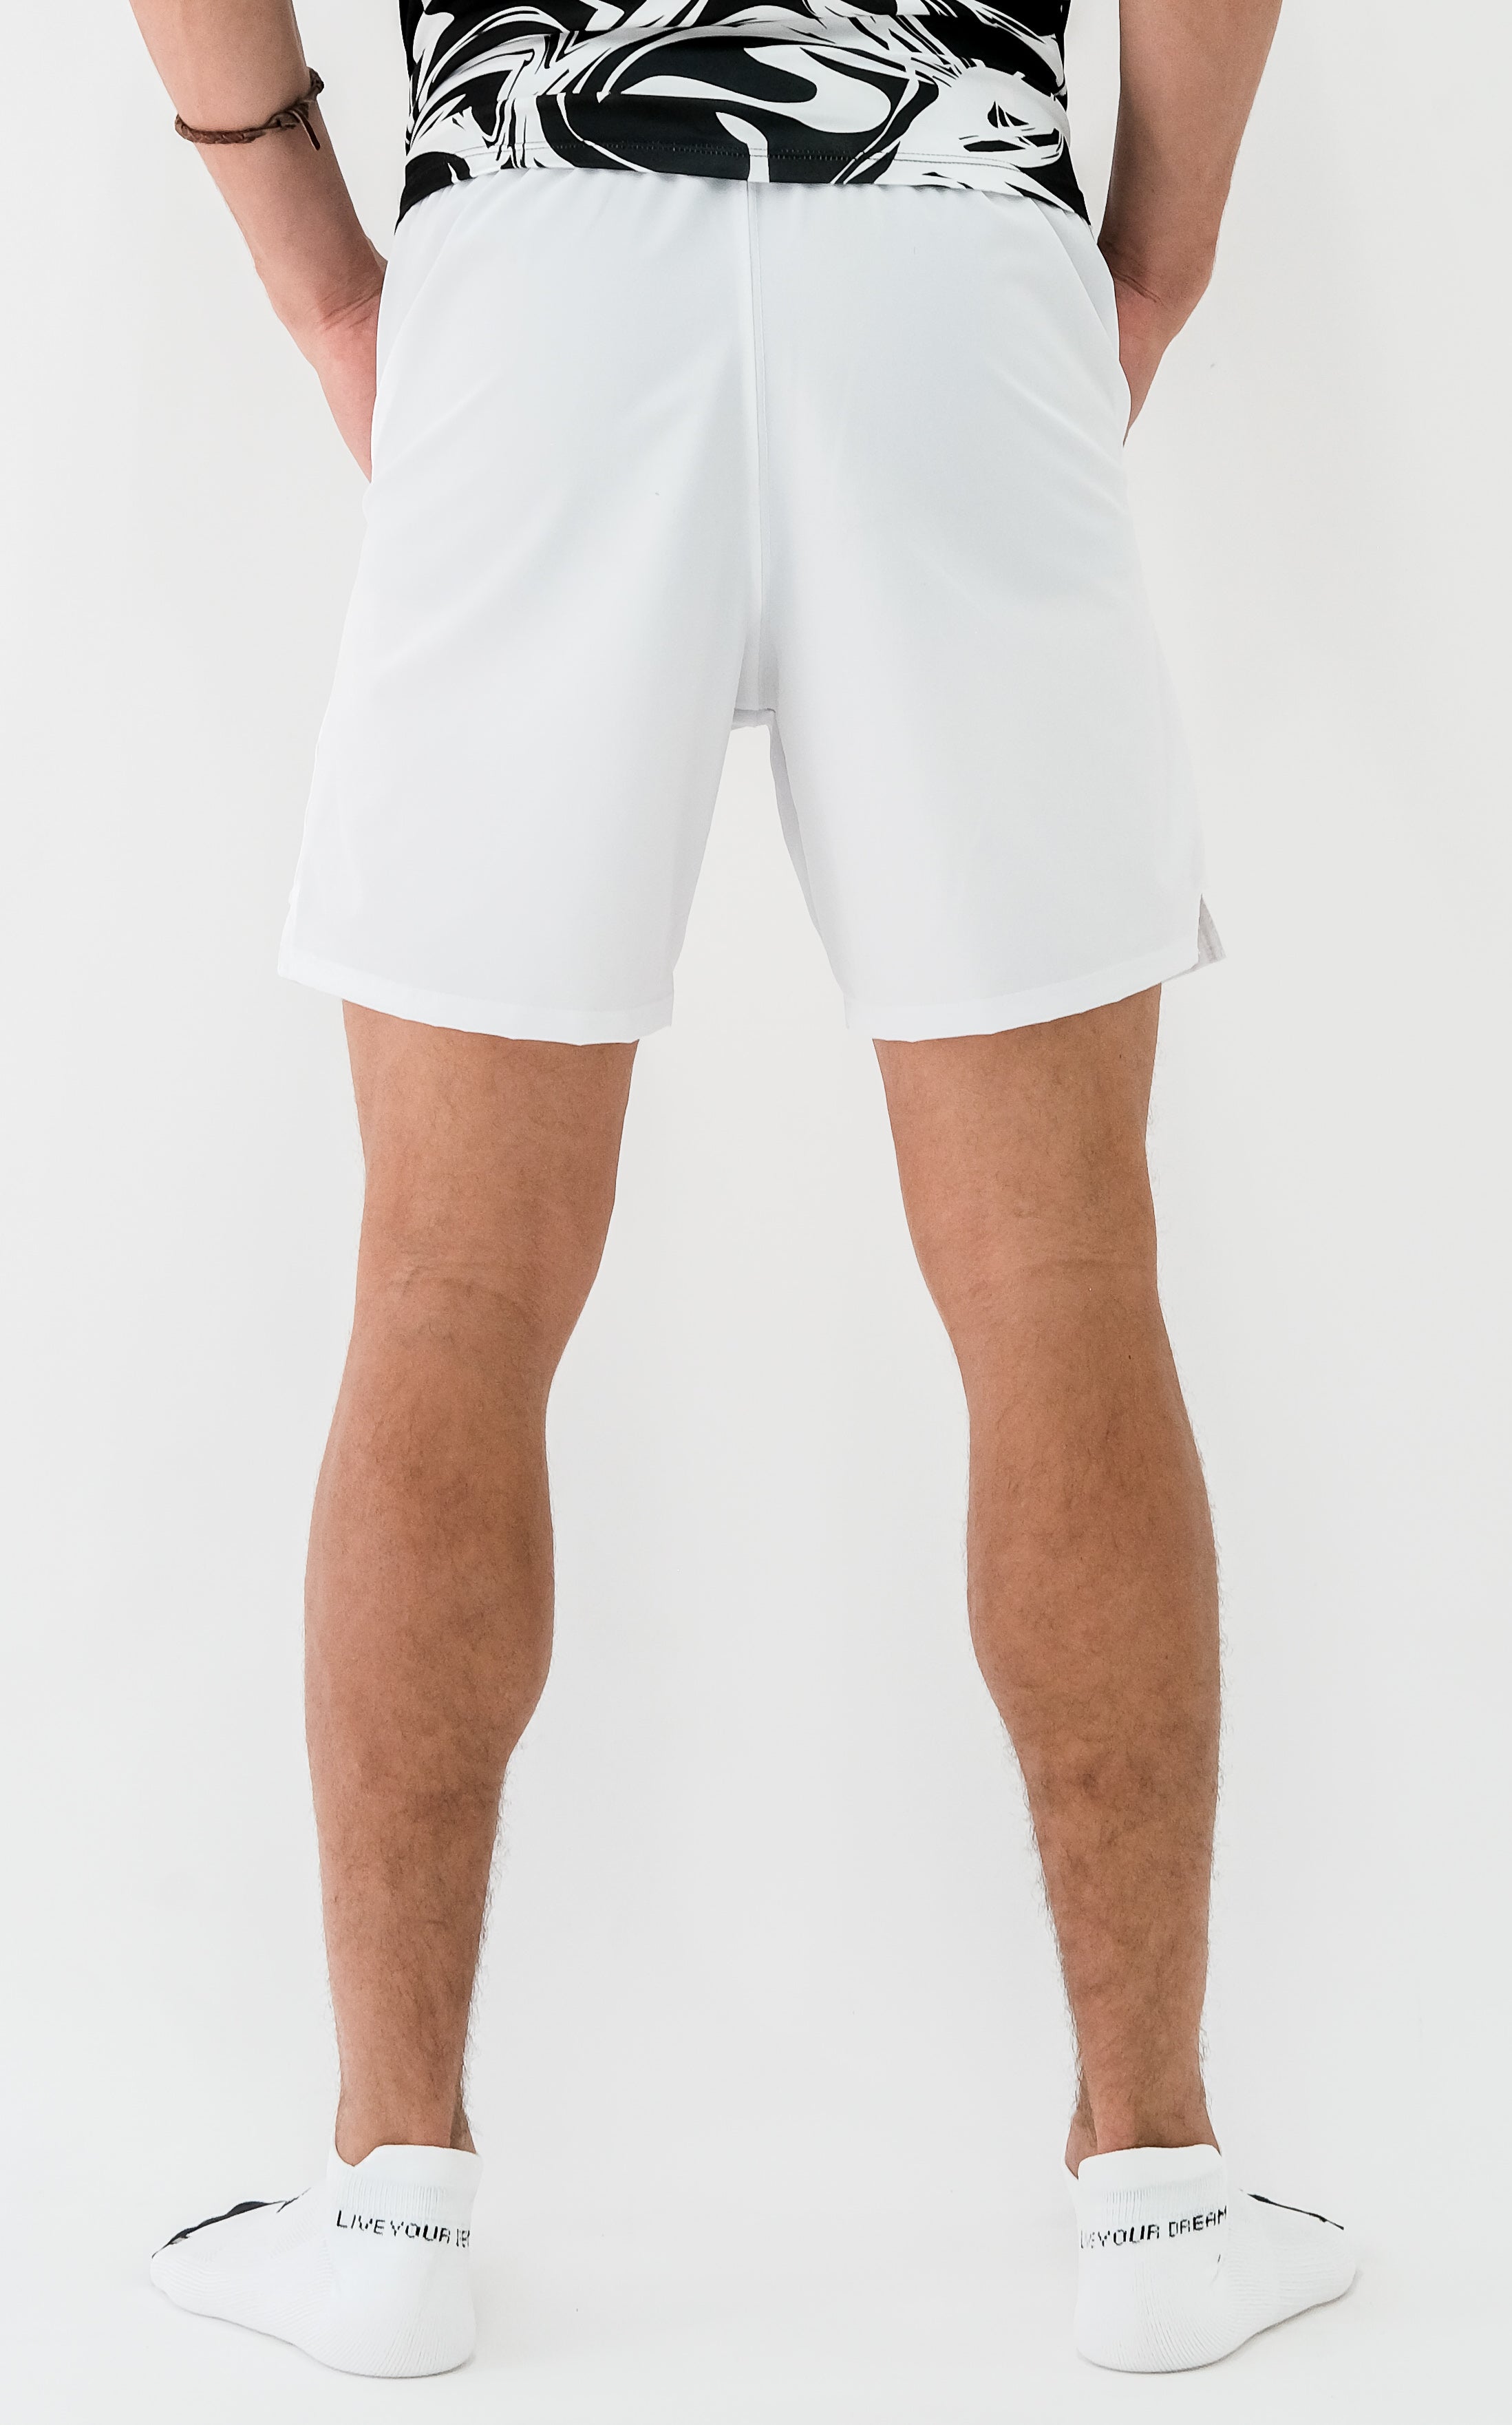 Recycled White Men's Fitness Short